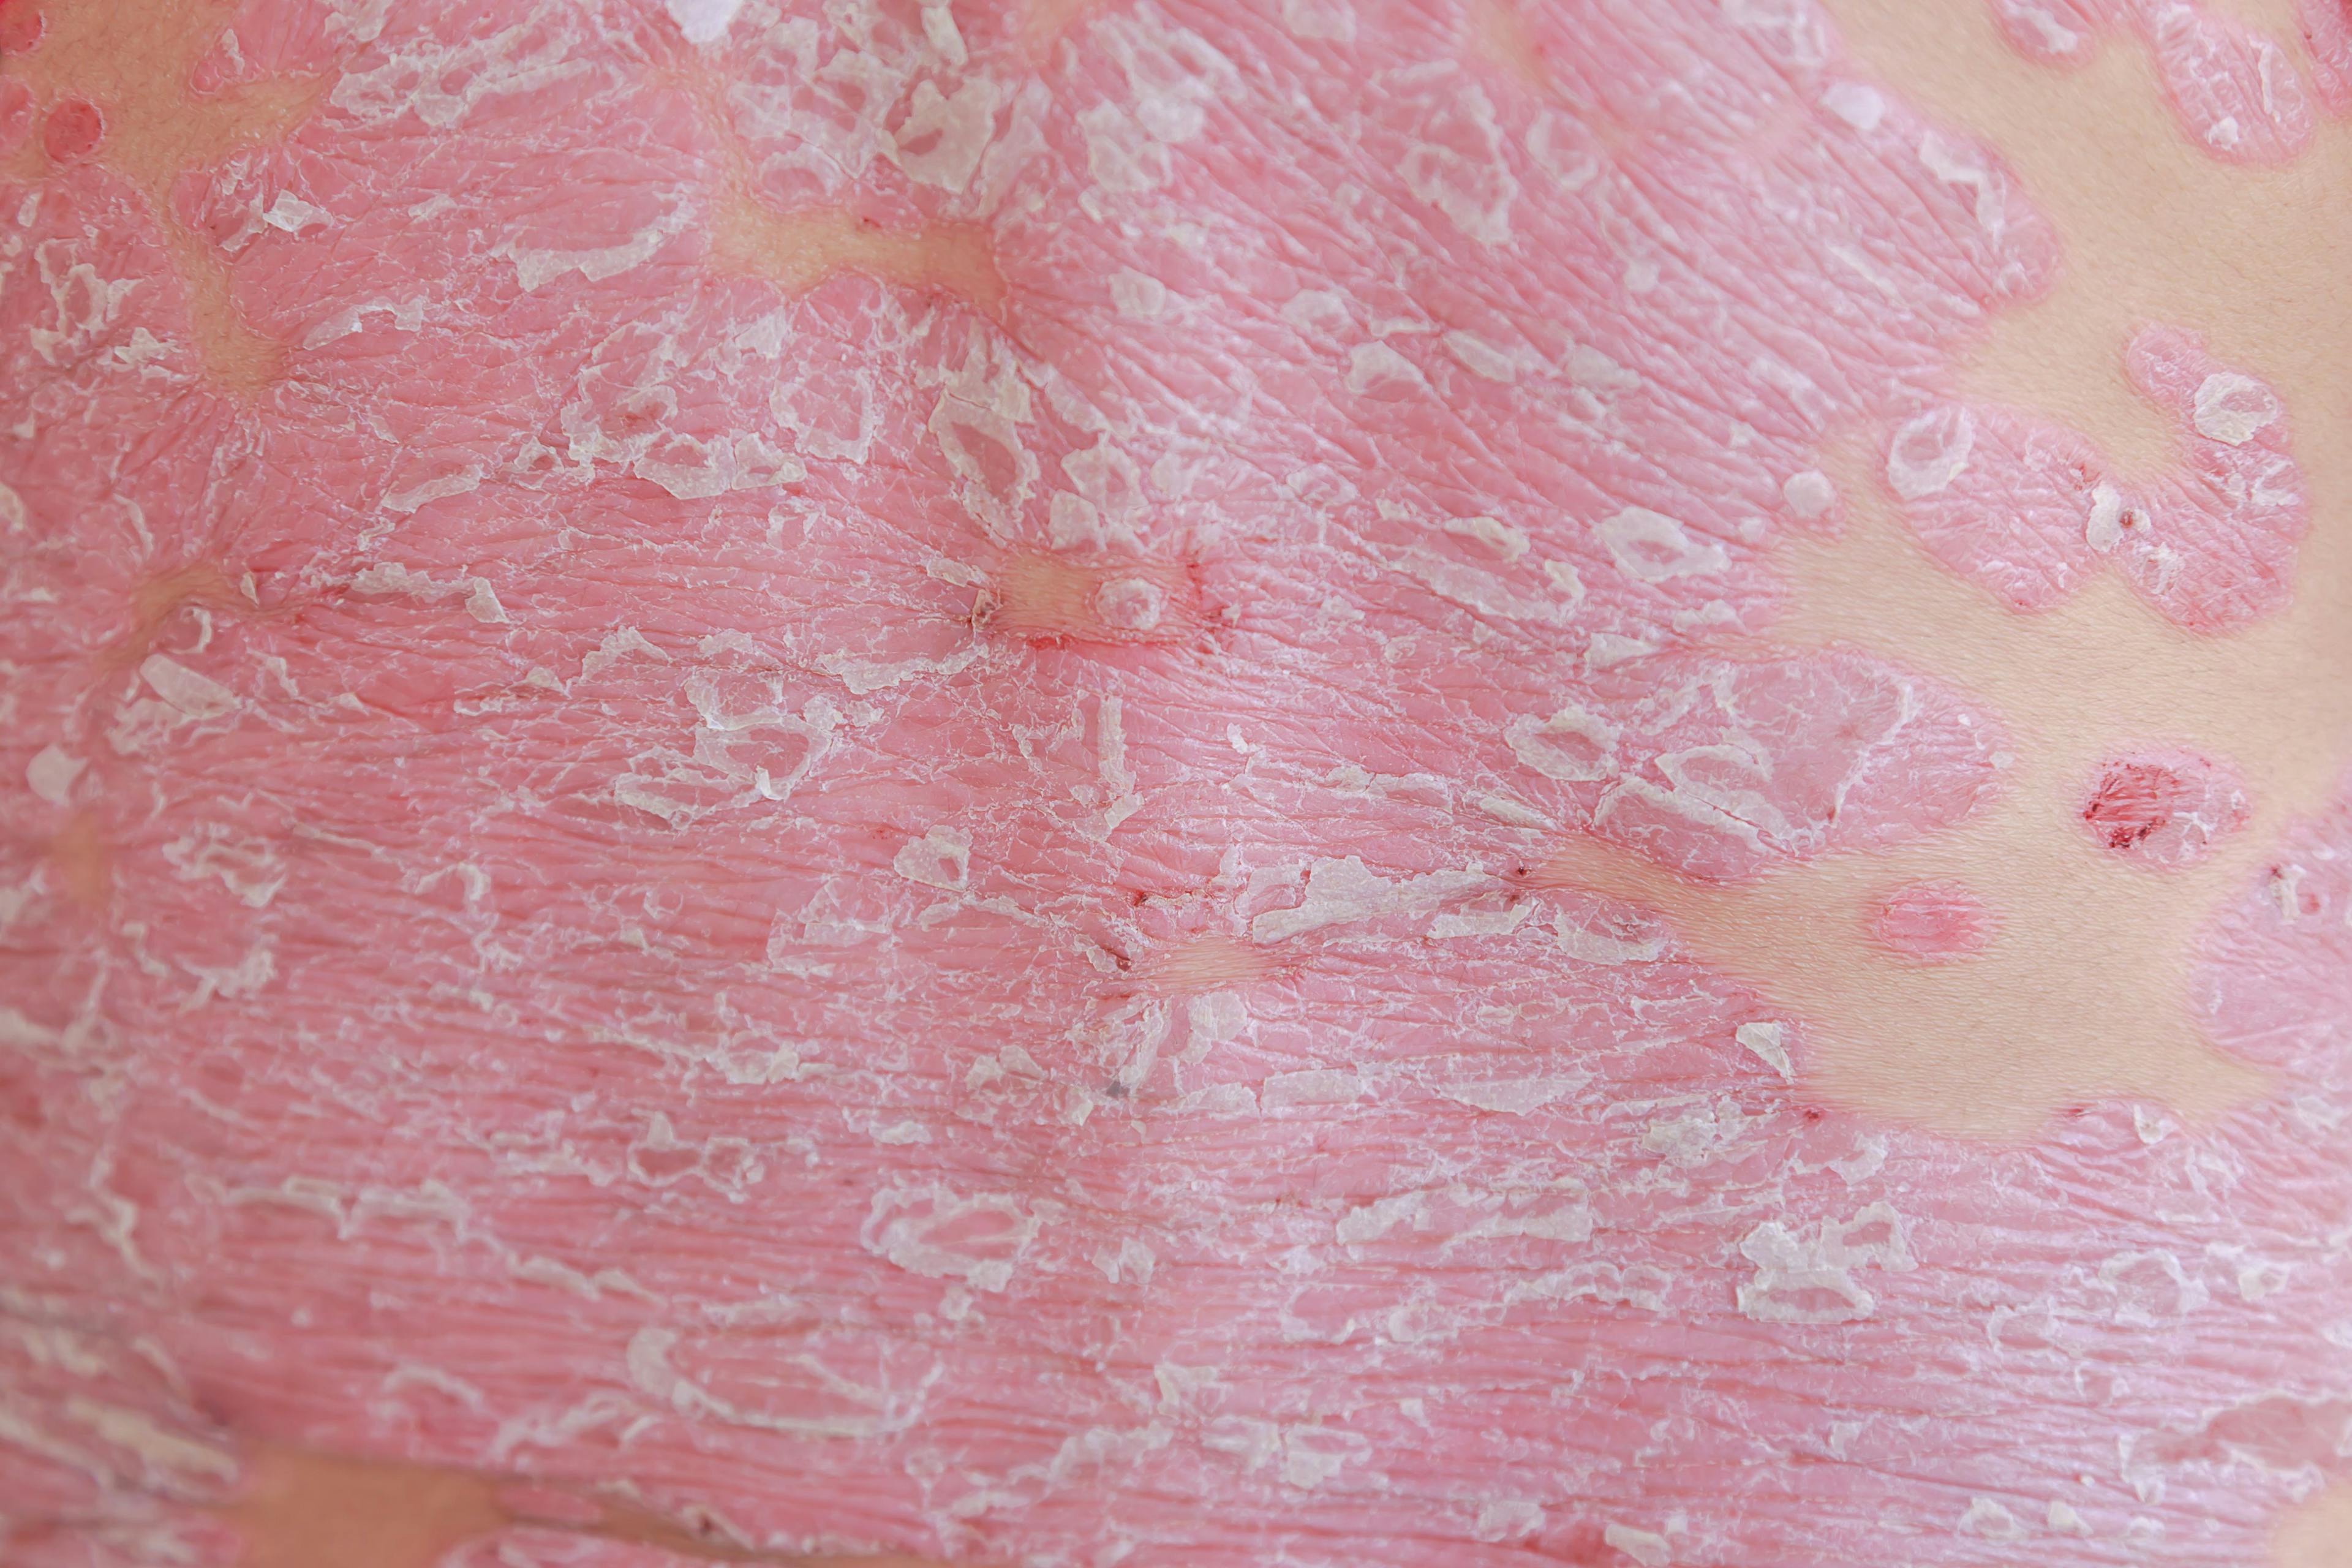 closeup of dermatitis